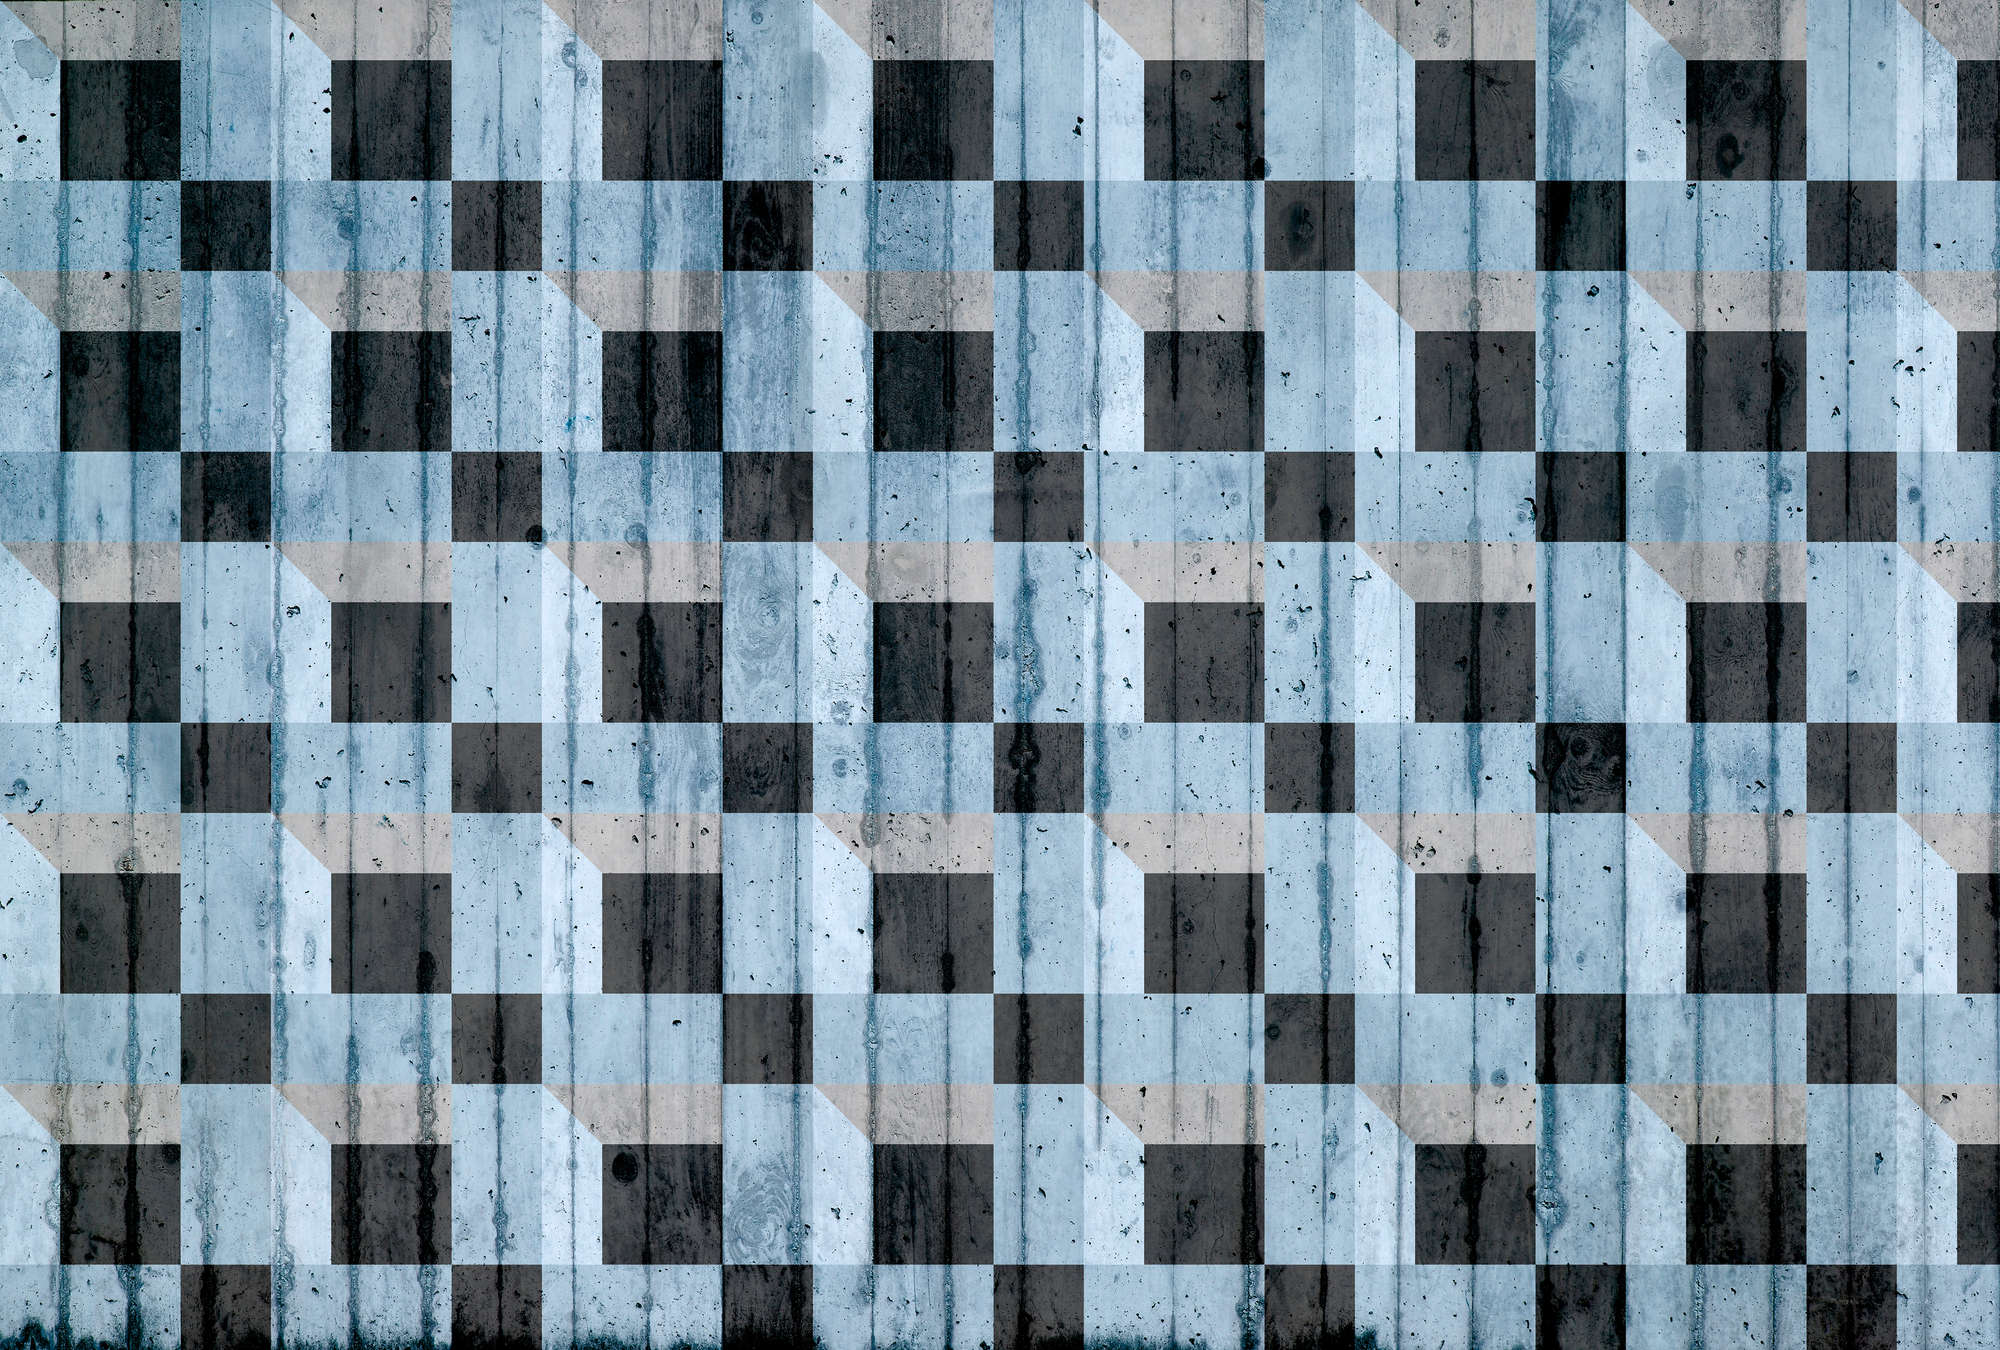             Papier peint imitation béton avec motif carré - bleu, noir, gris
        